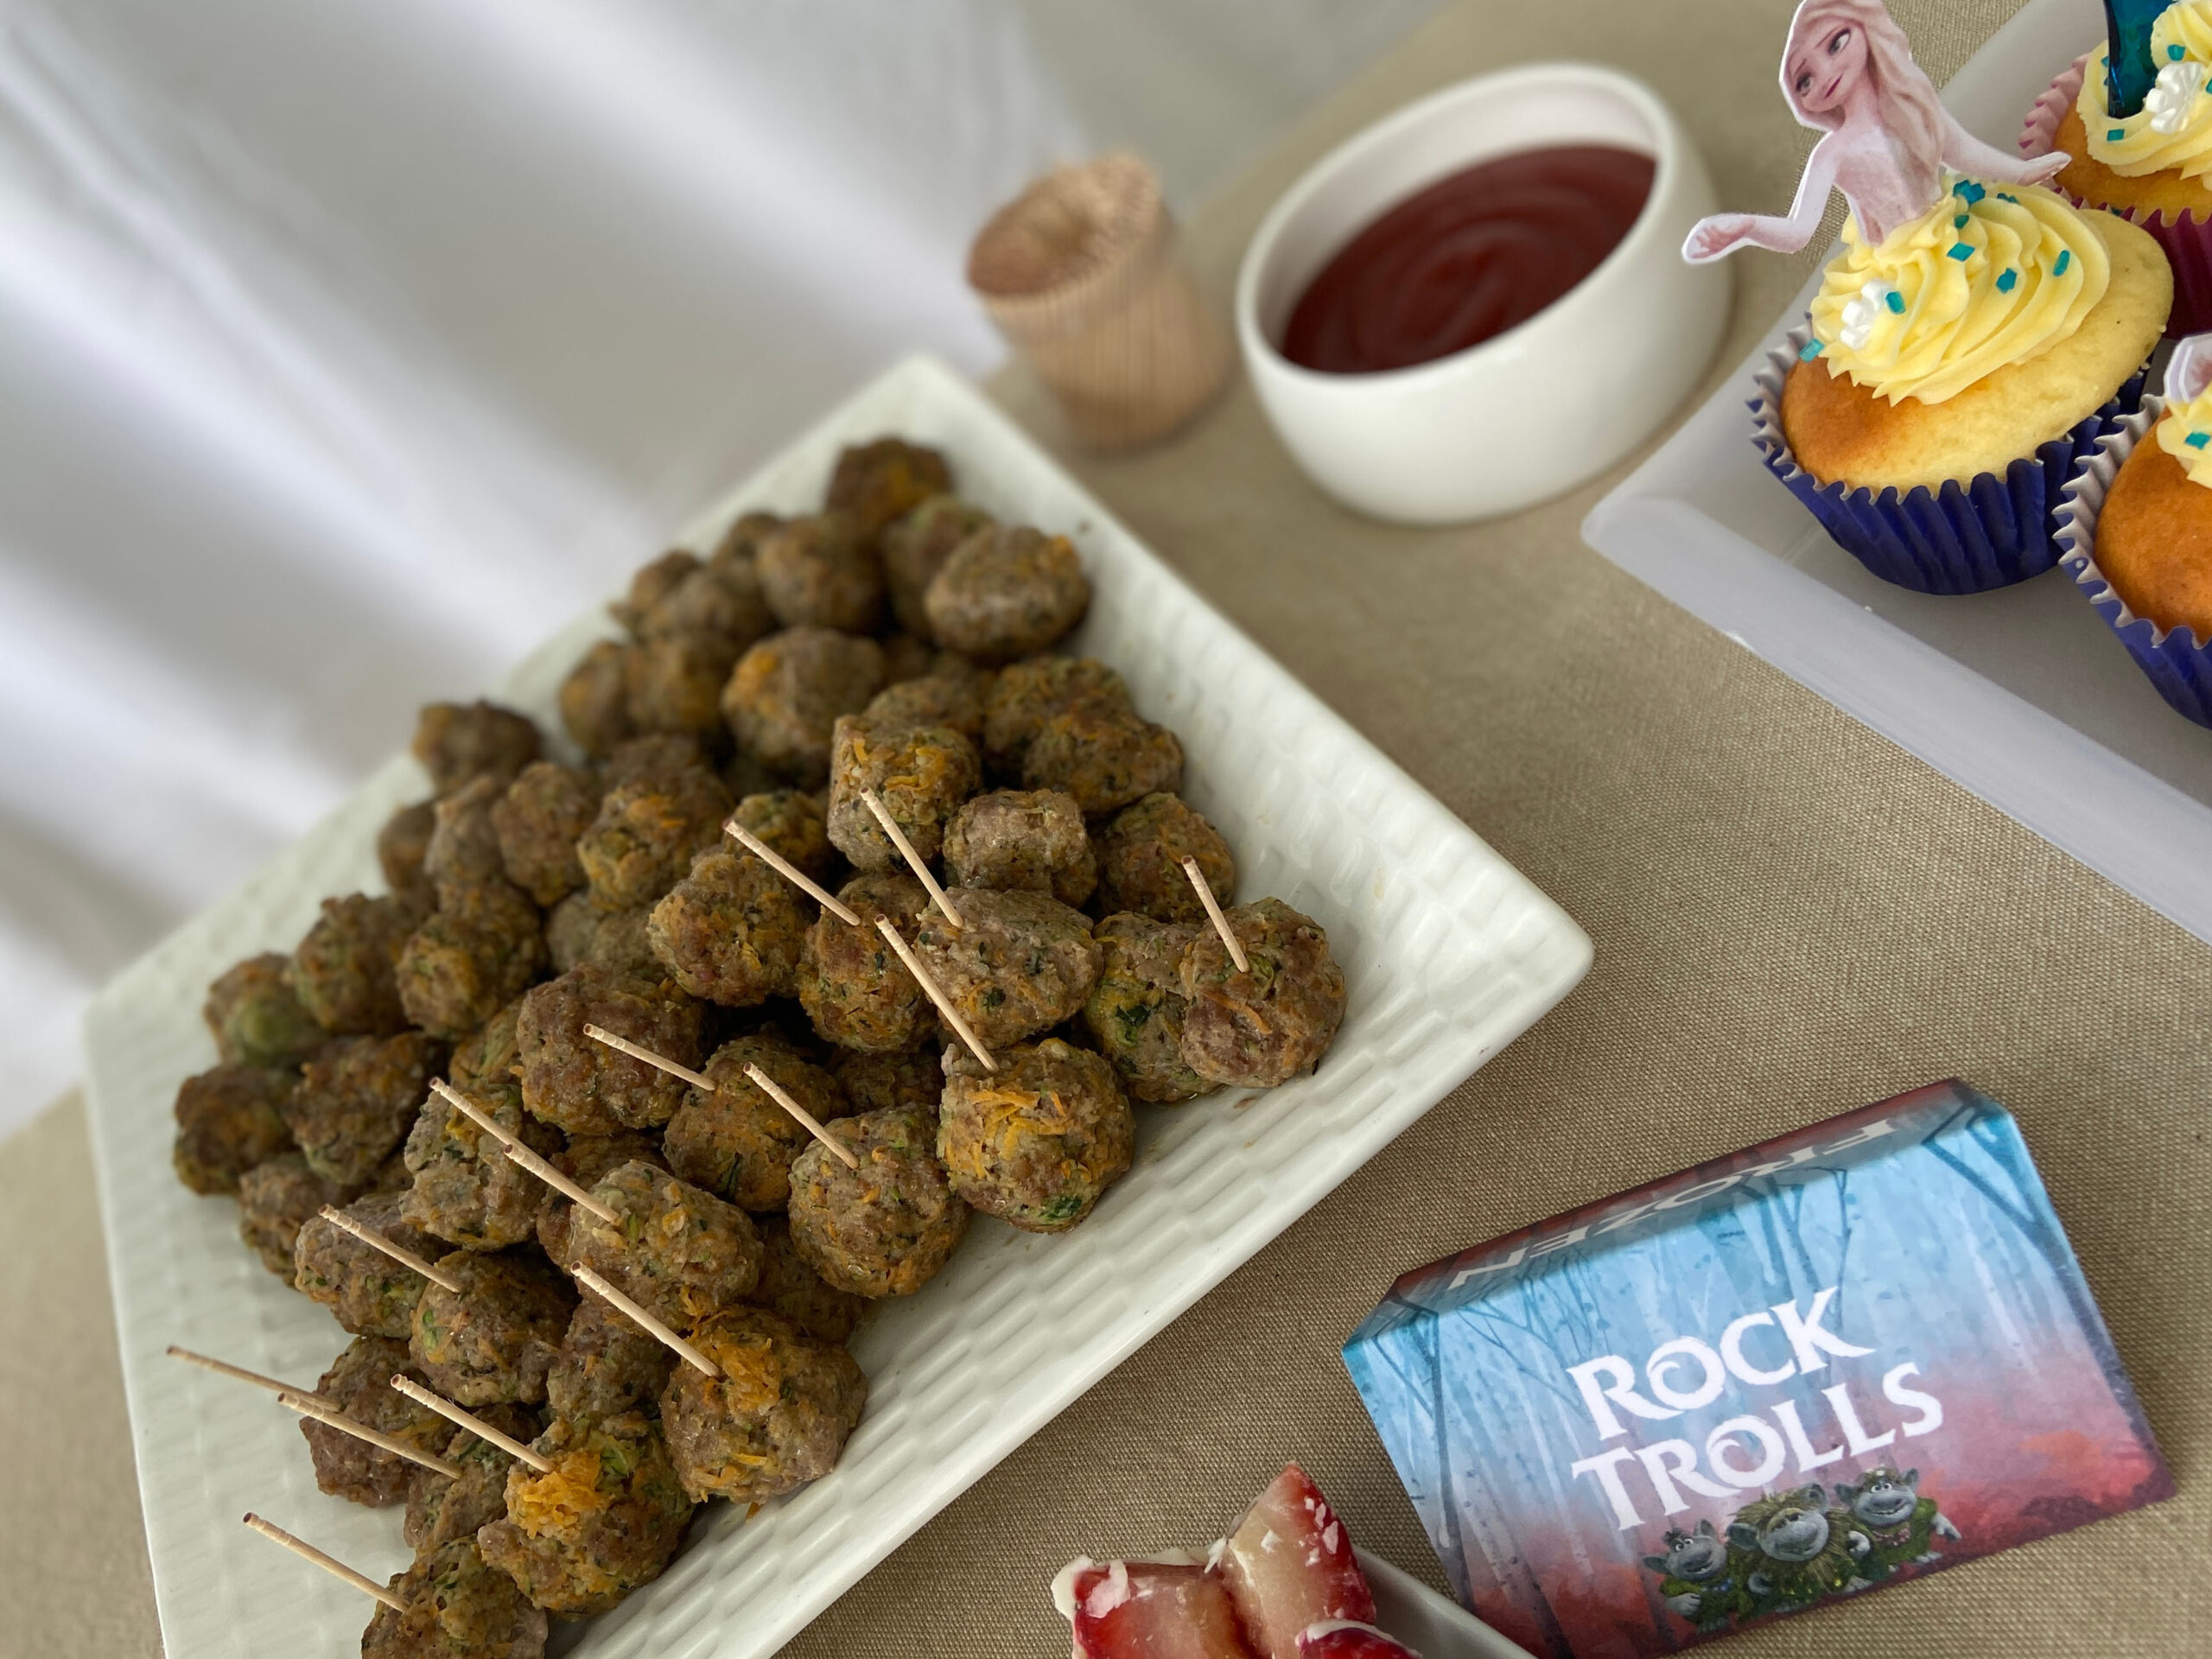 Rock Trolls Meatballs Frozen Themed Party Food